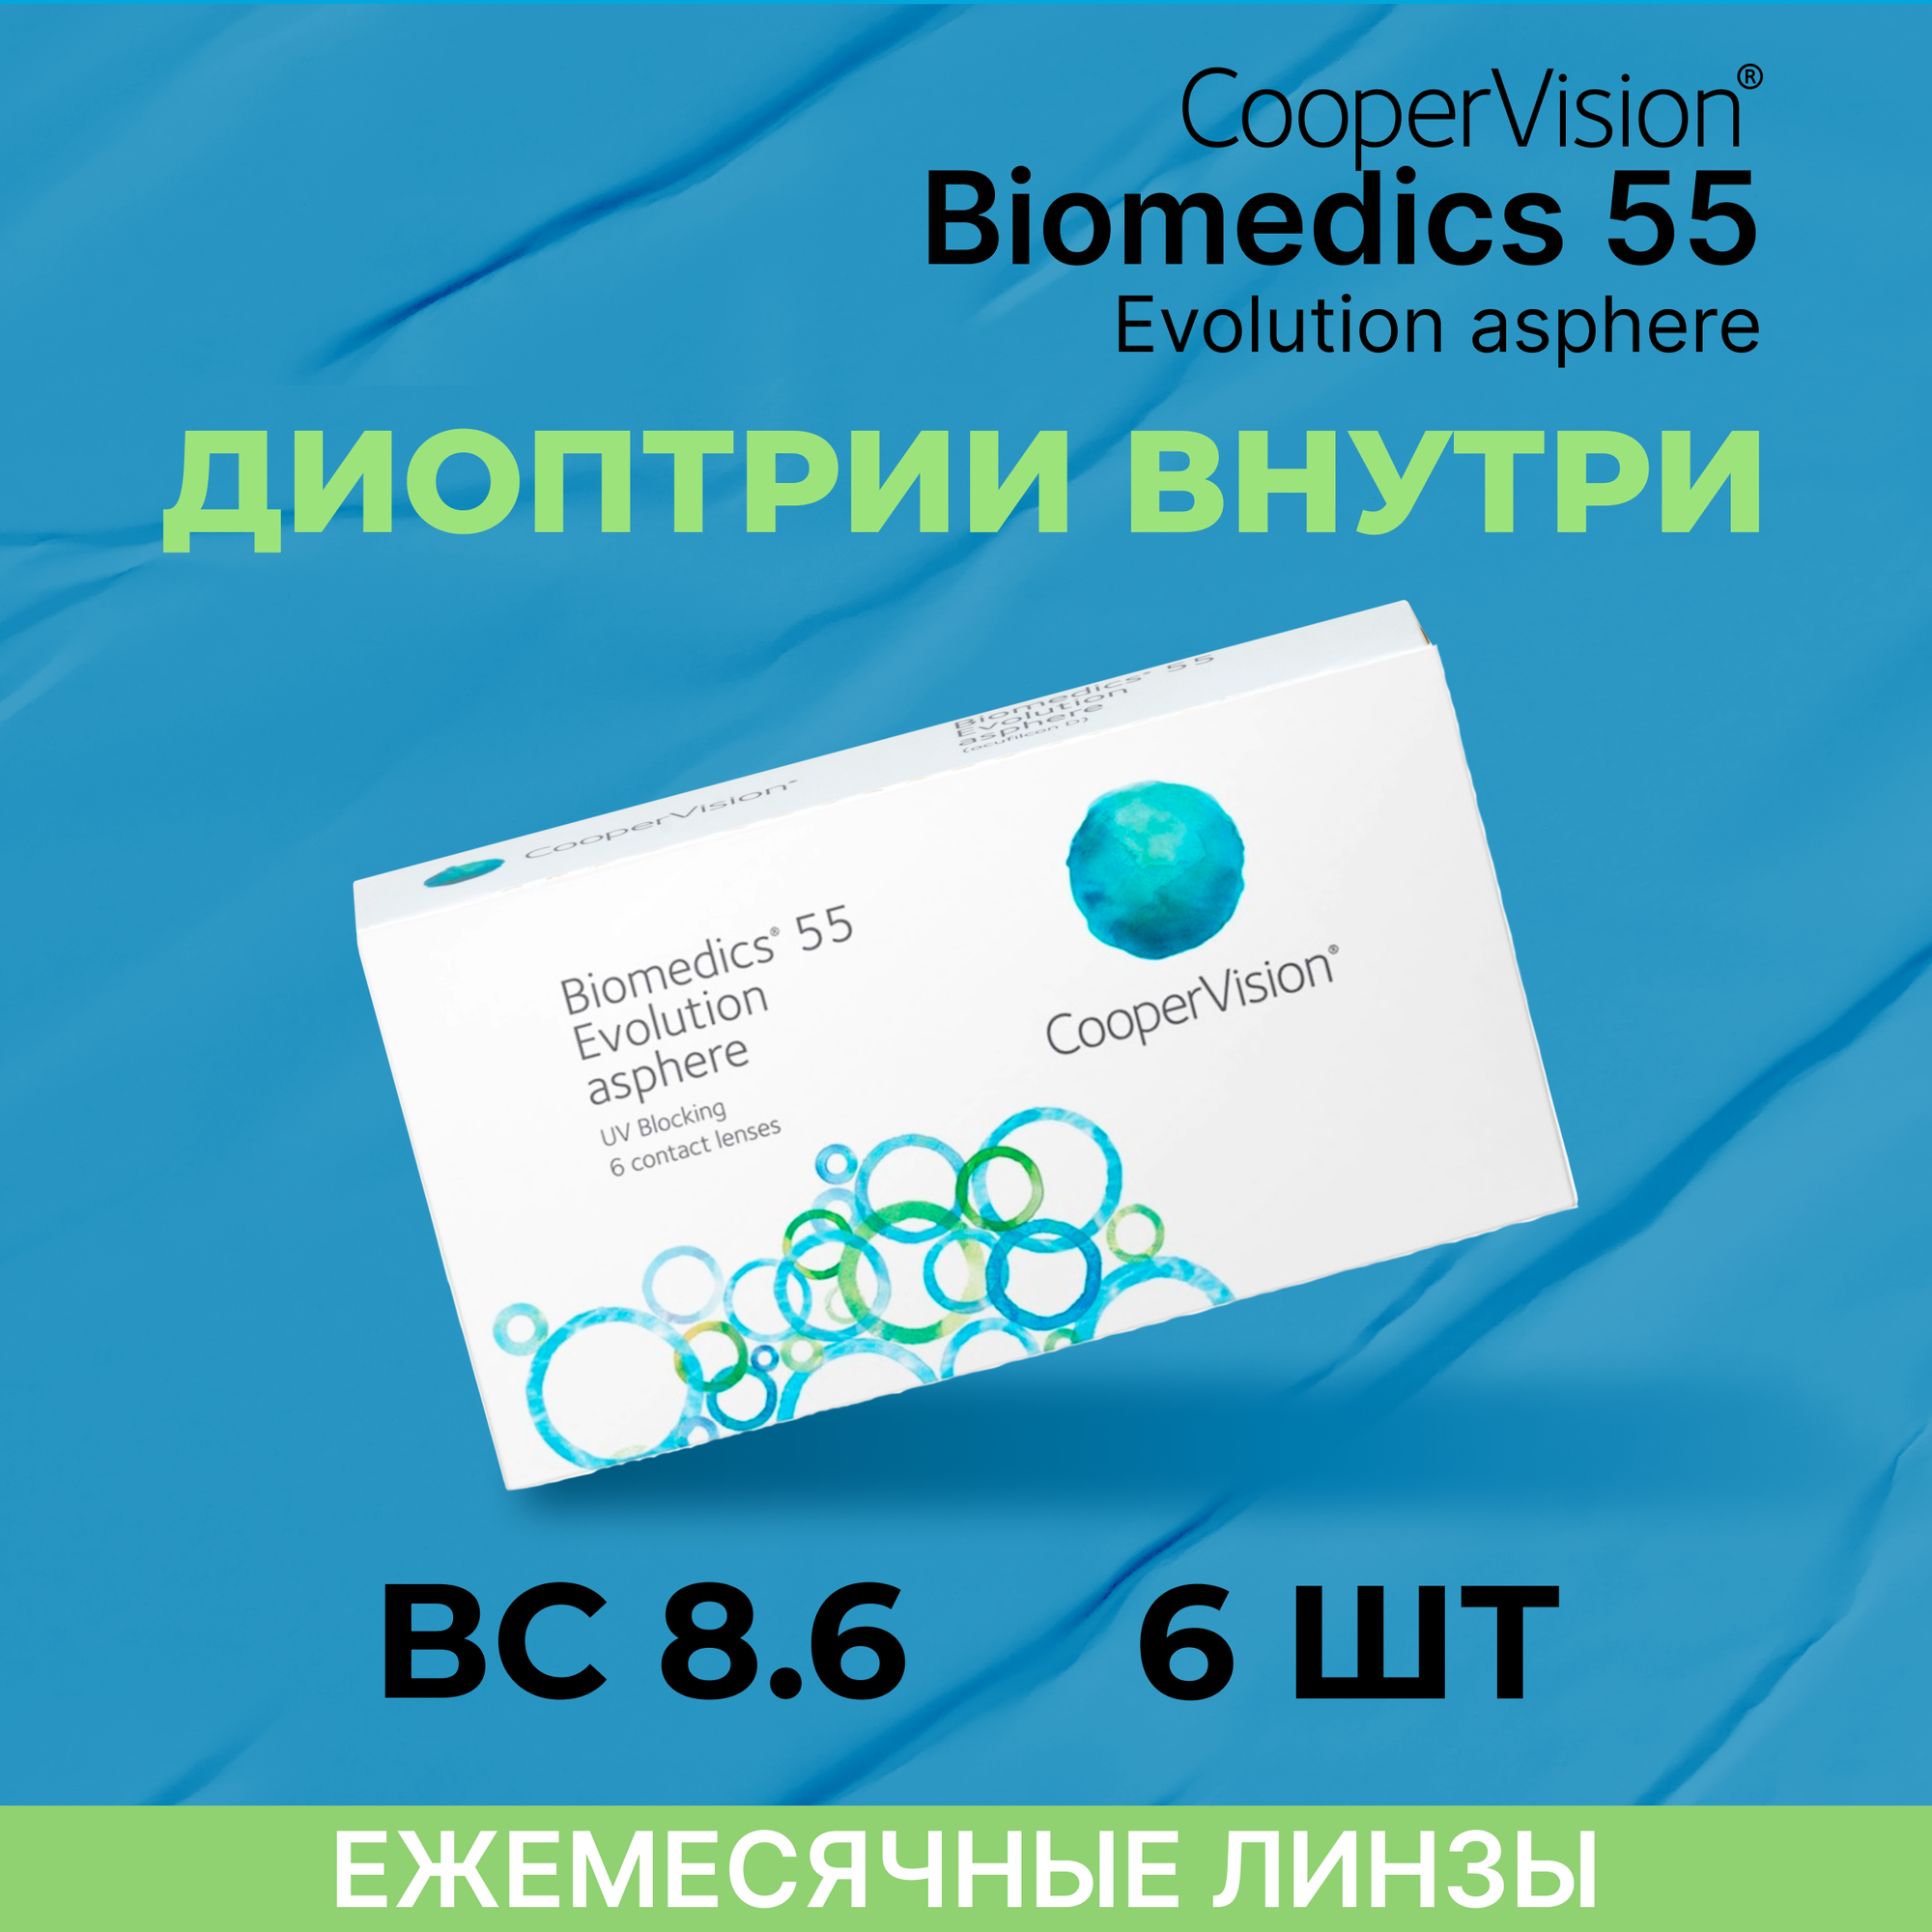 Контактные линзы CooperVision Biomedics 55 Evolution Asphere (6 линз) -3.25 R 8.6, ежемесячные, прозрачные